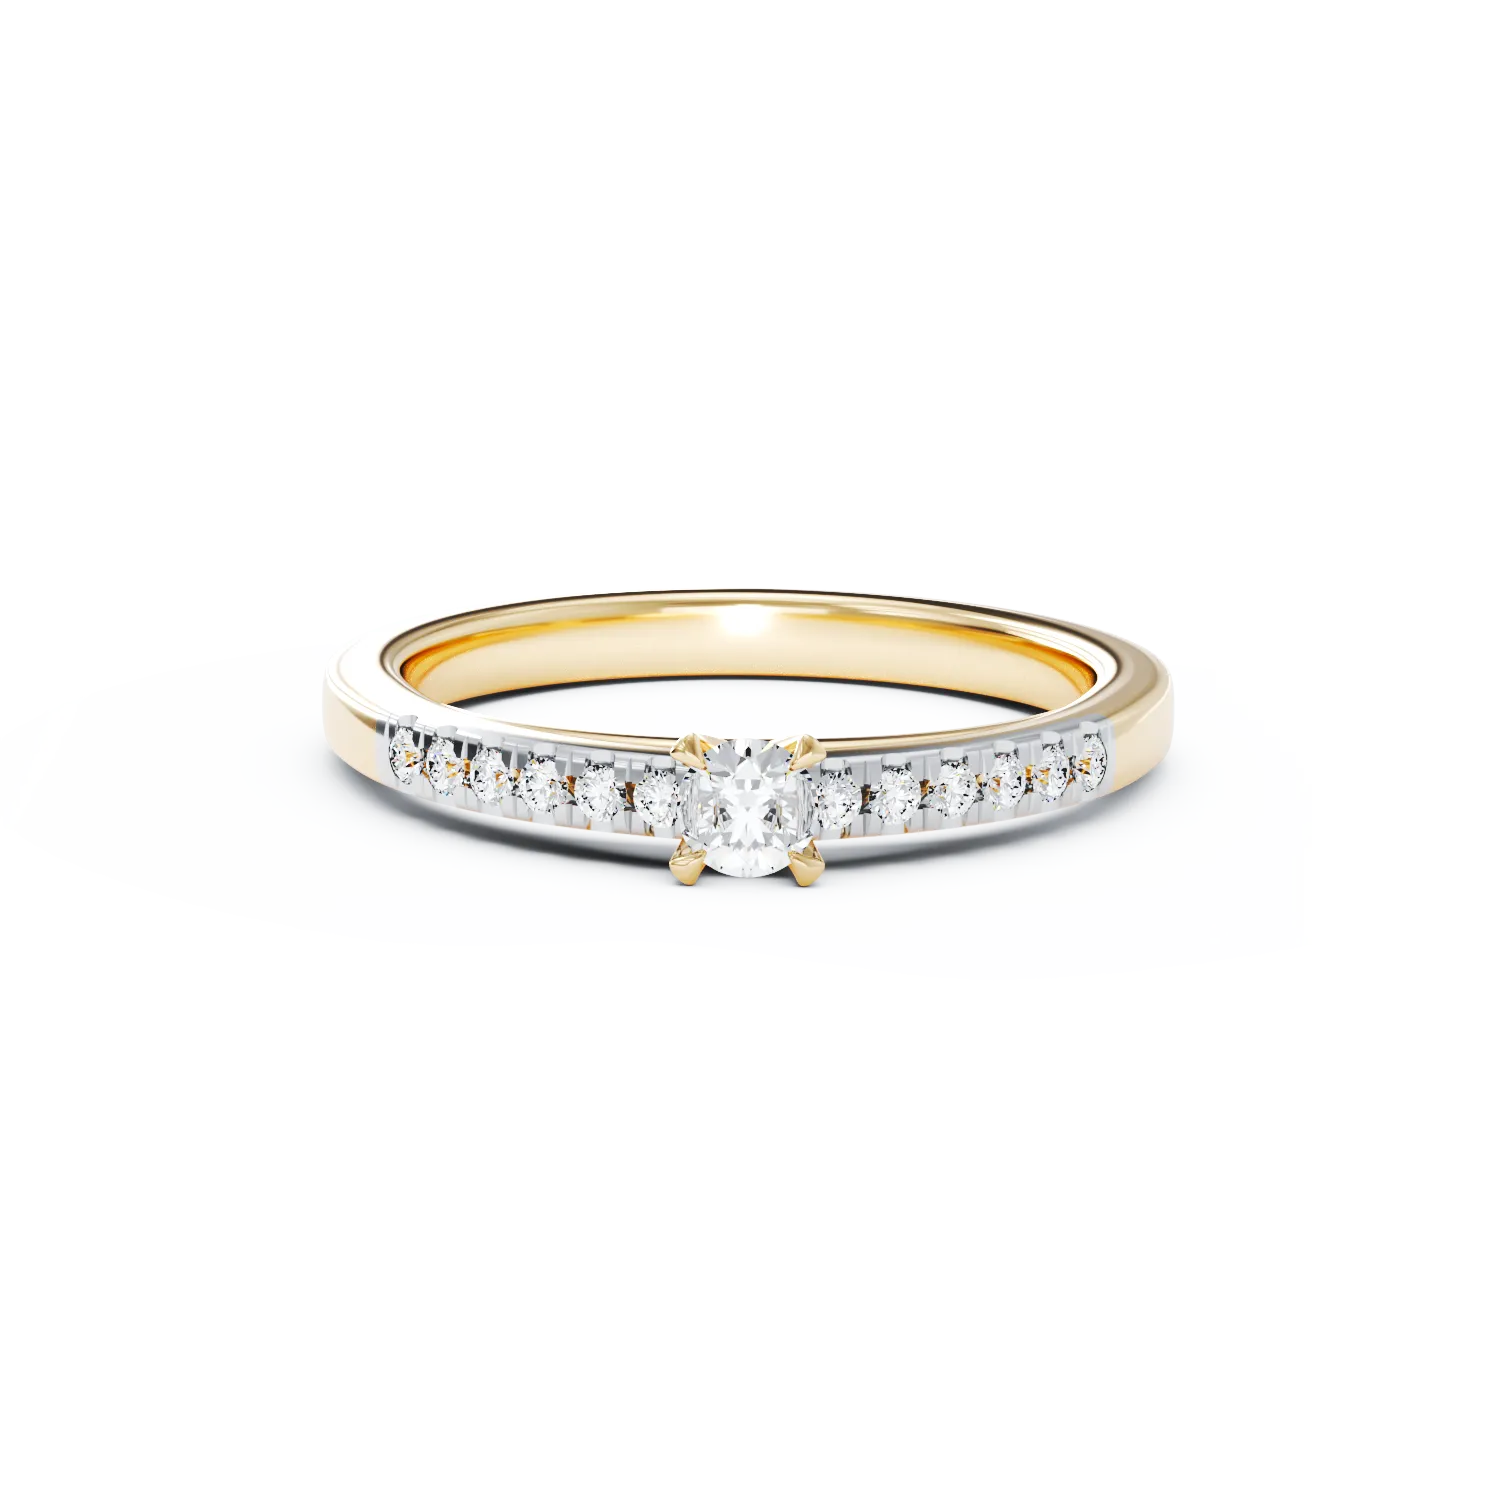 Eljegyzési gyűrű 18K-os sárga aranyból 0,24ct gyémánttal és 0,13ct gyémánttal. Gramm: 2,9